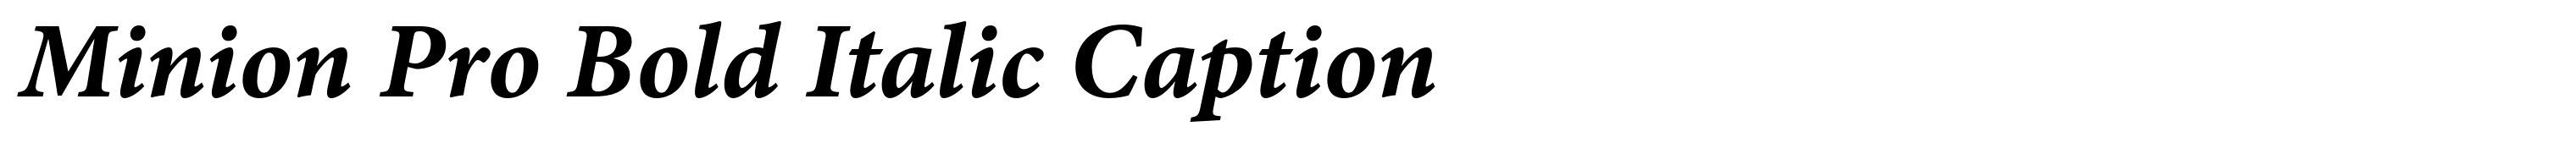 Minion Pro Bold Italic Caption